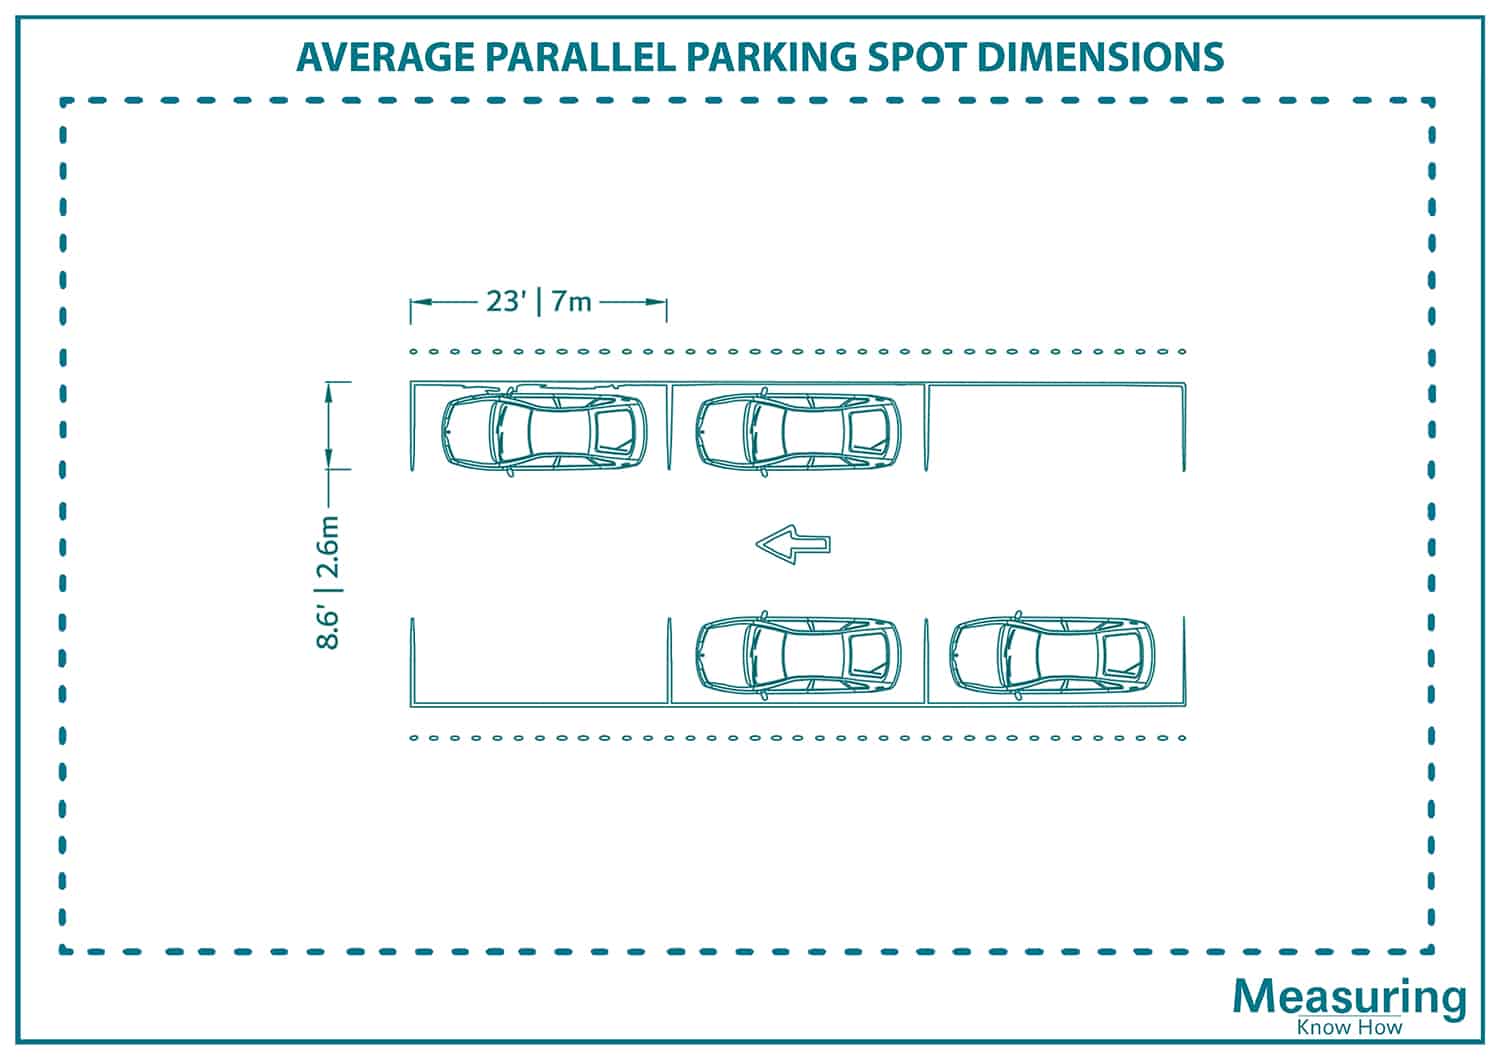 Average parralel parking spot dimensions